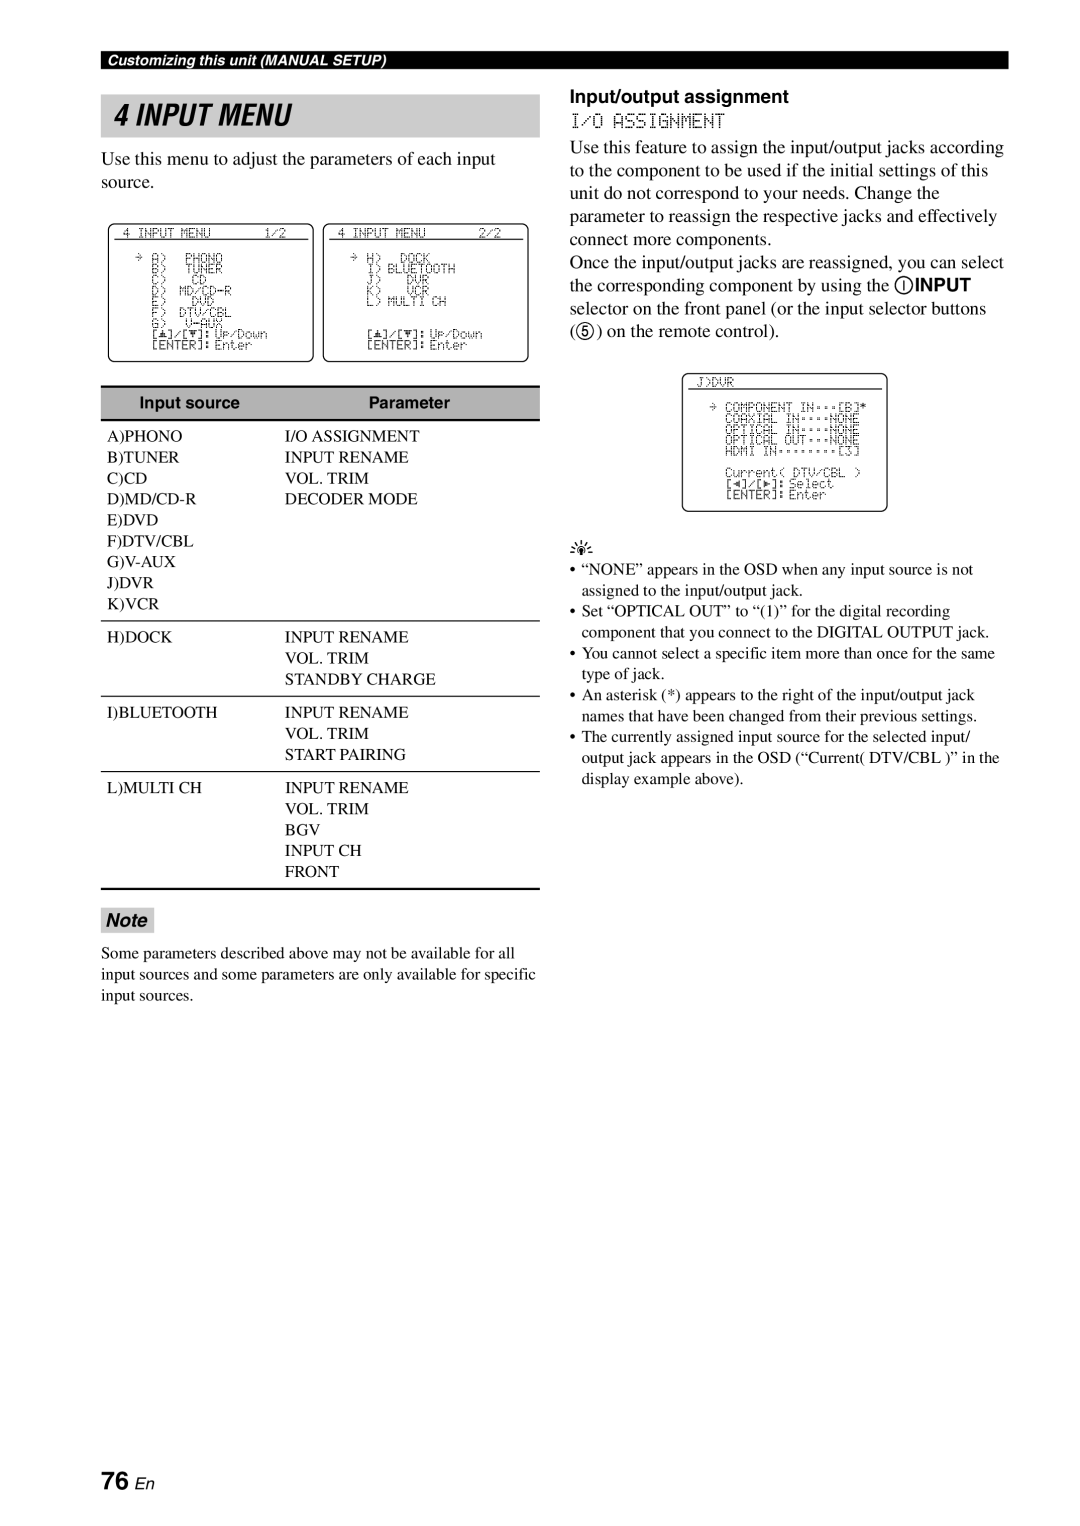 Yamaha DSP-AX863SE owner manual Input Menu, 76 En, Input/output assignment 